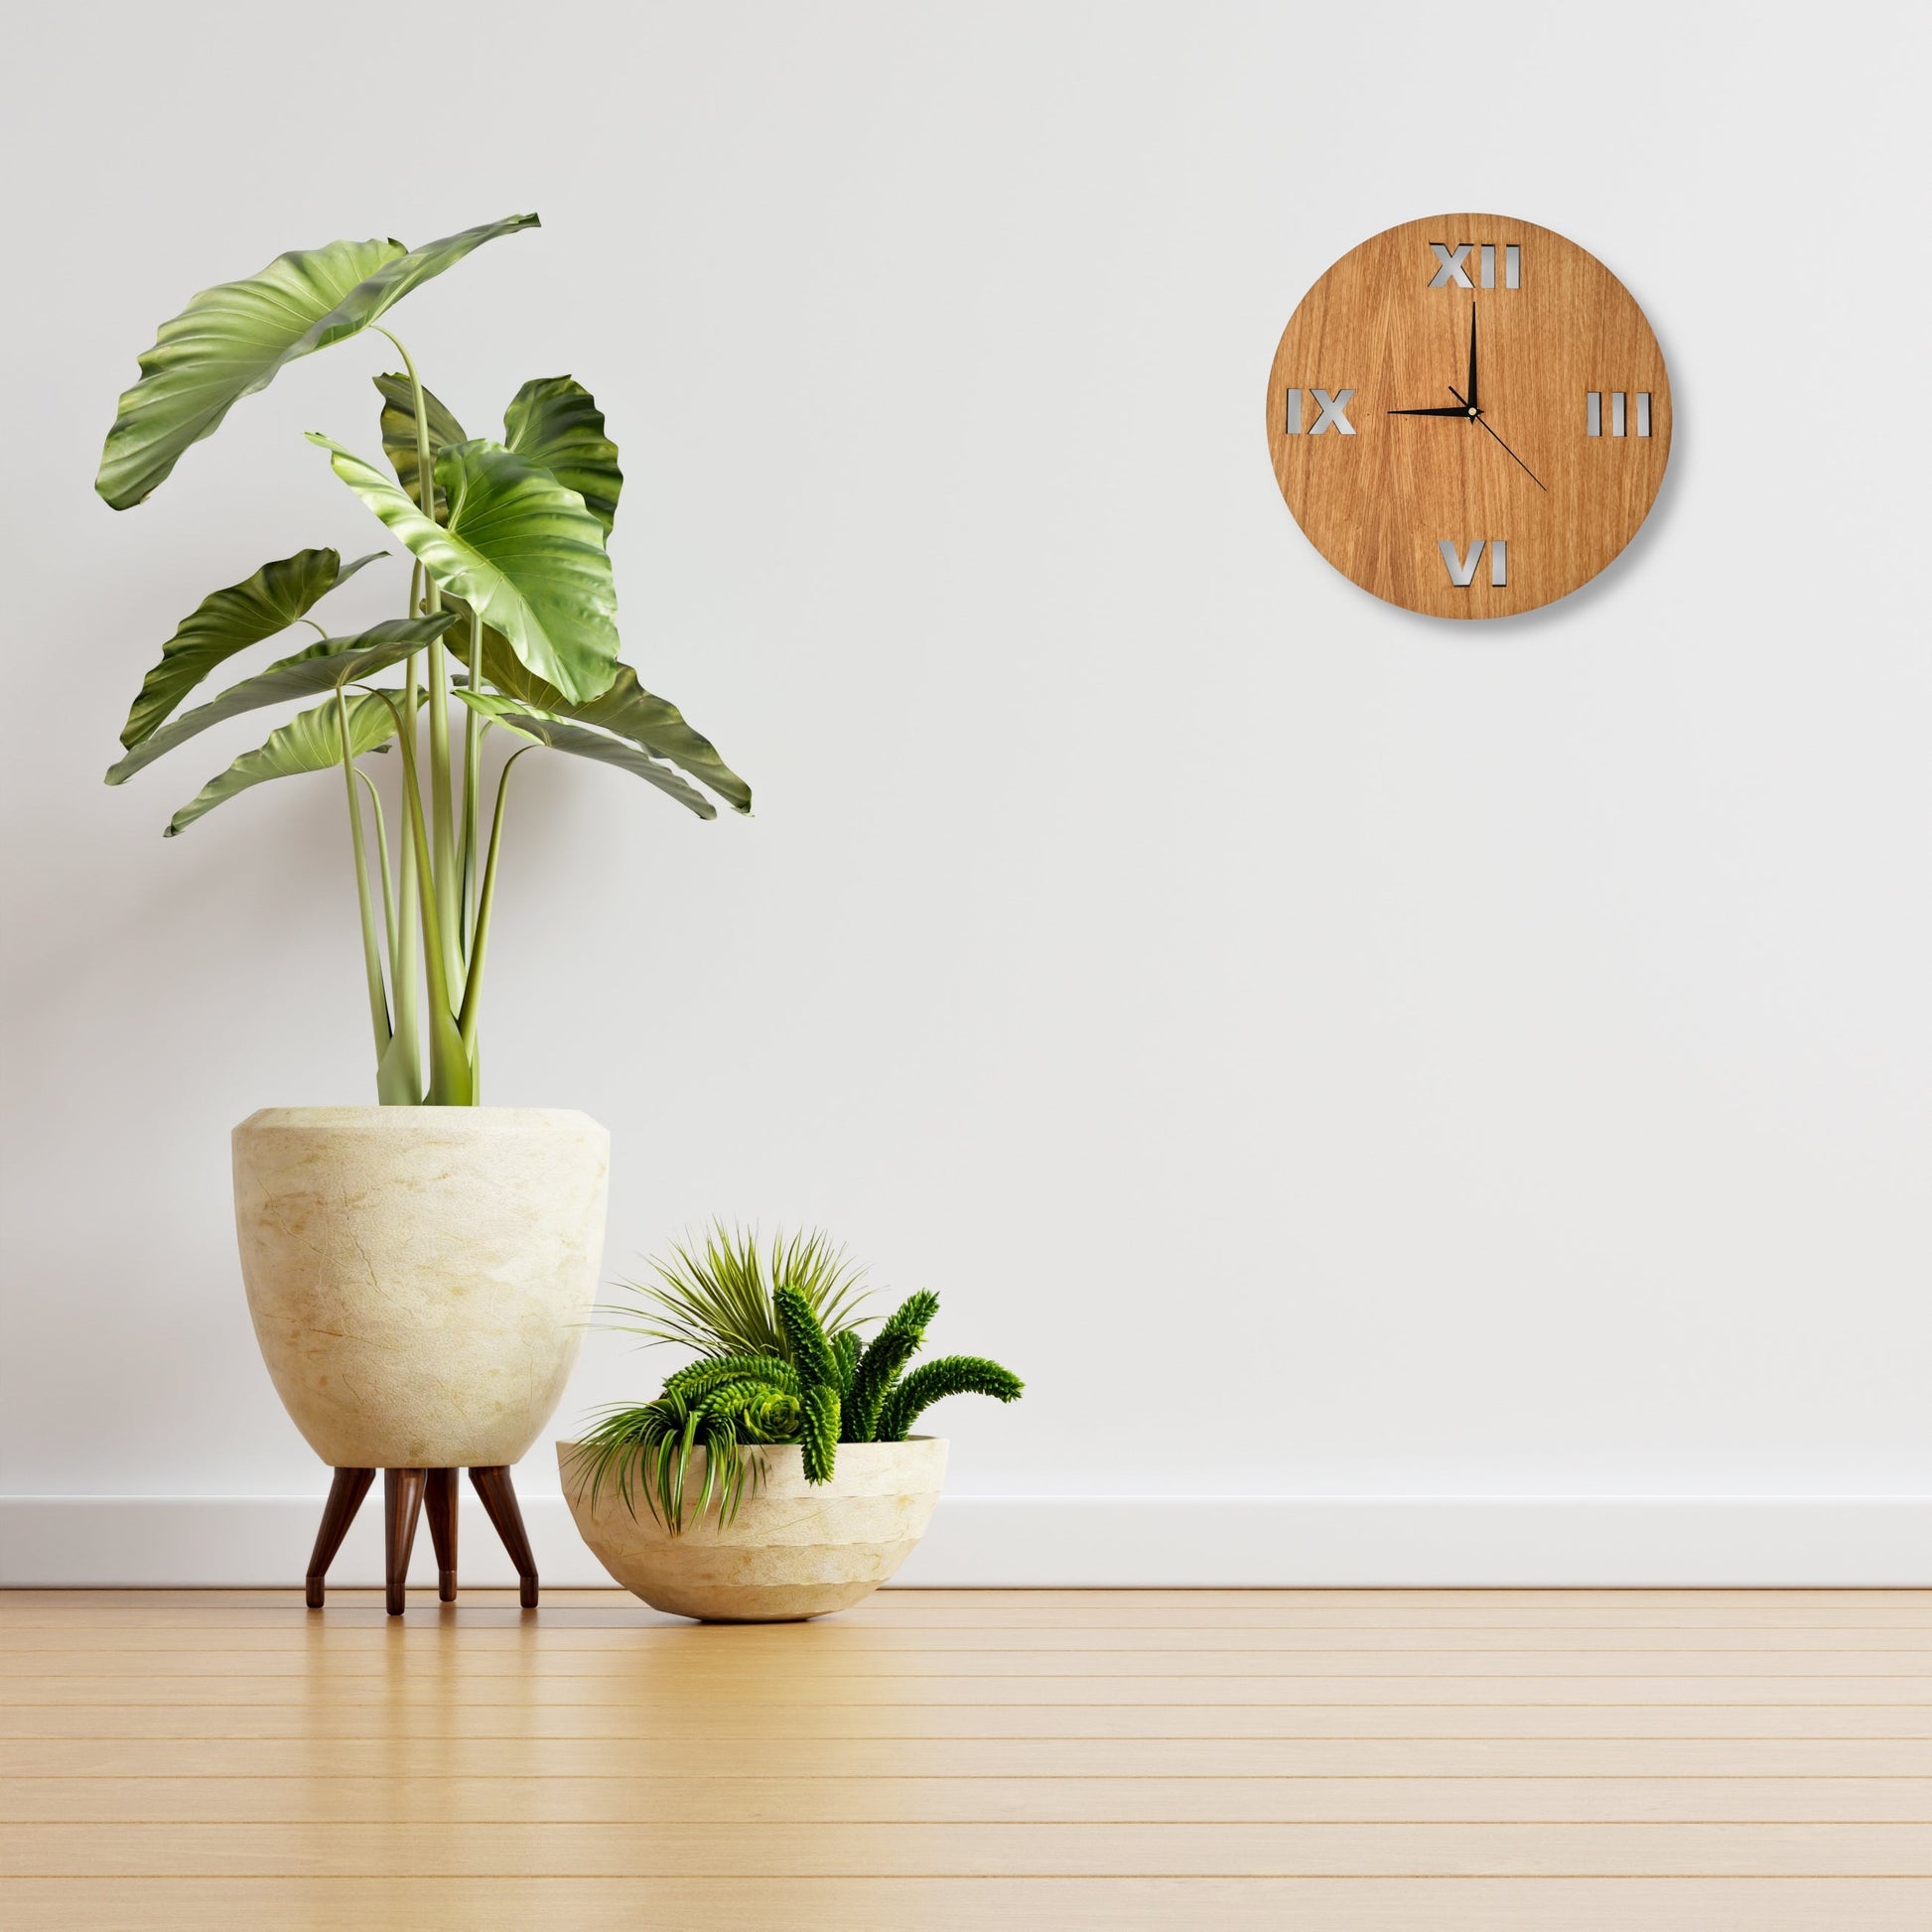 Oak Roman Numerals Clock - Unique Minimal Wall Clock - Clock Design Co™